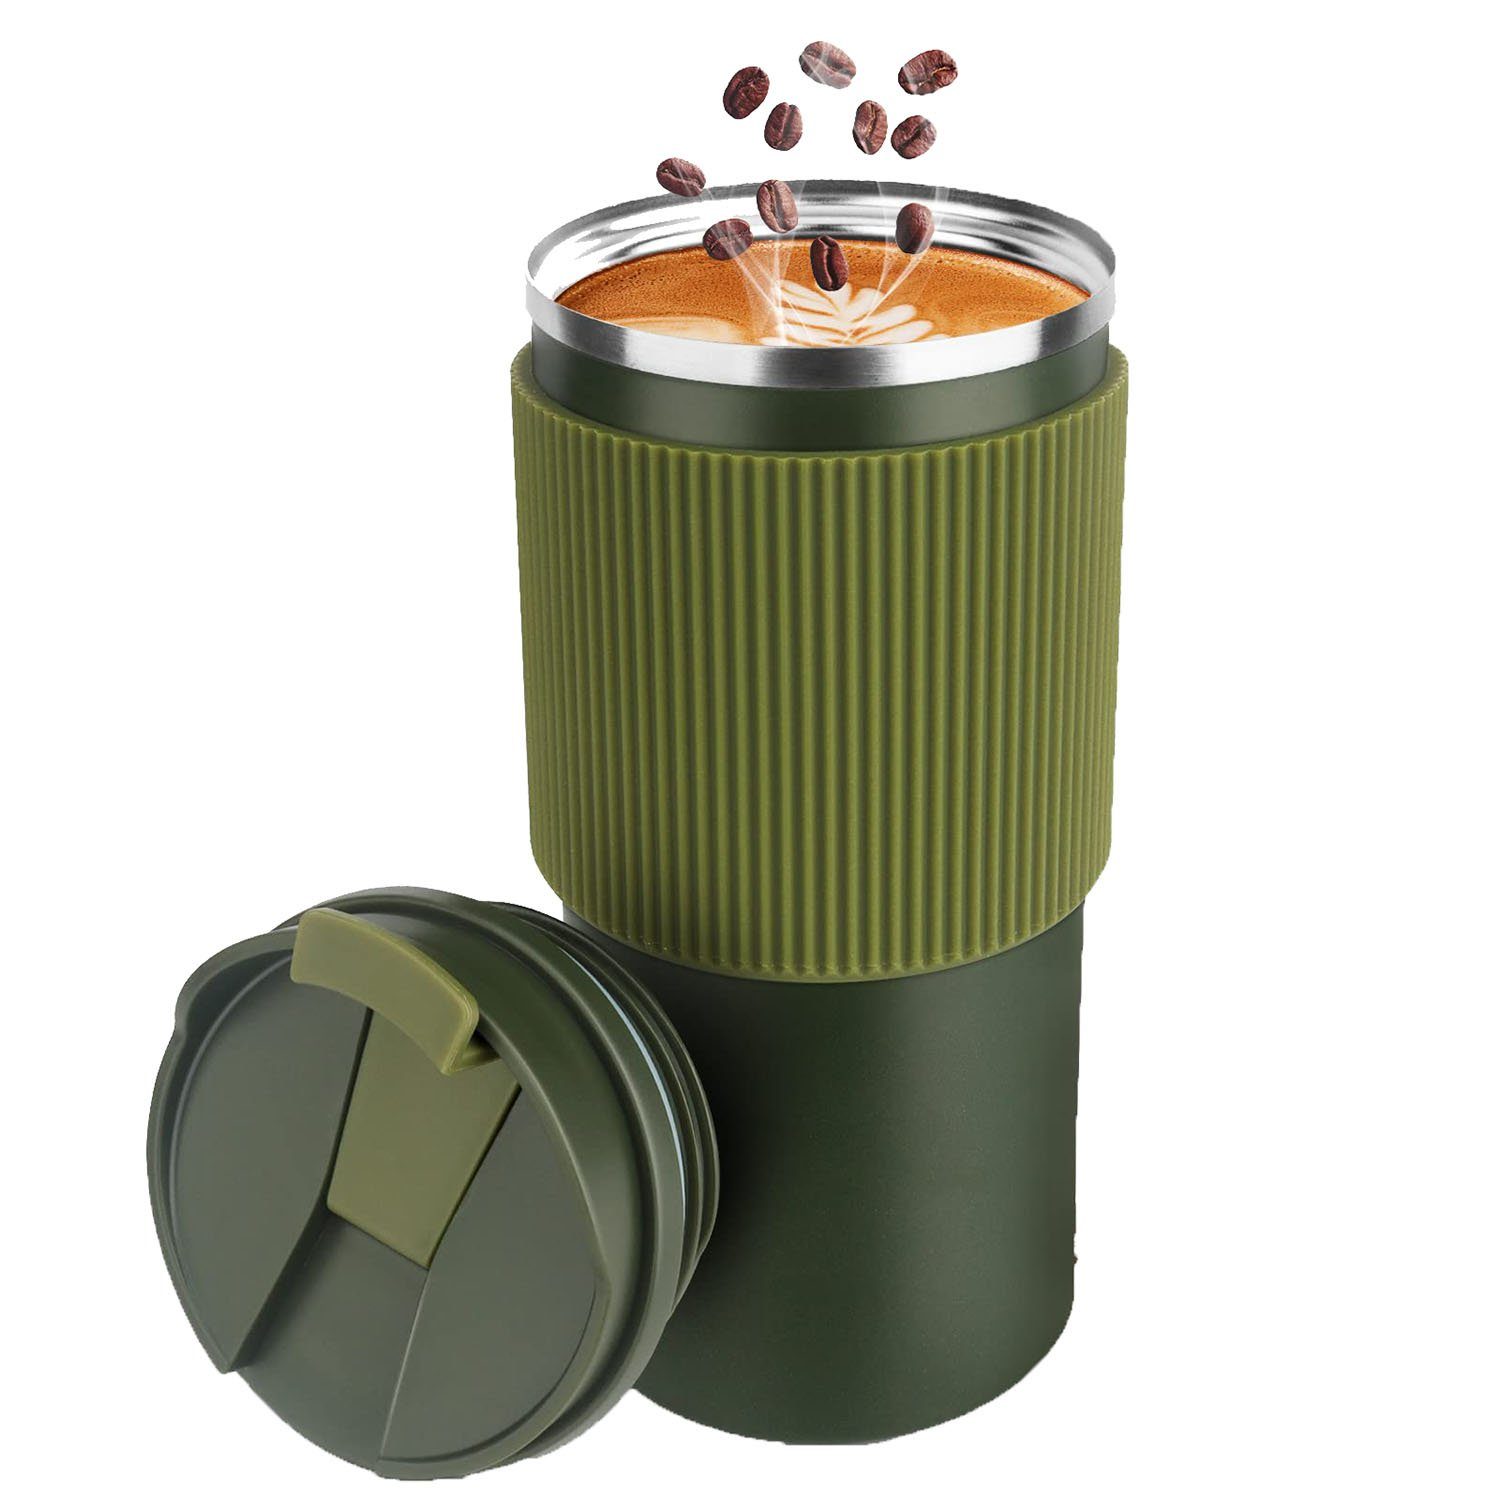 GelldG Becher Thermobecher-Isolierbecher, Kaffeebecher auslaufsicher Grün